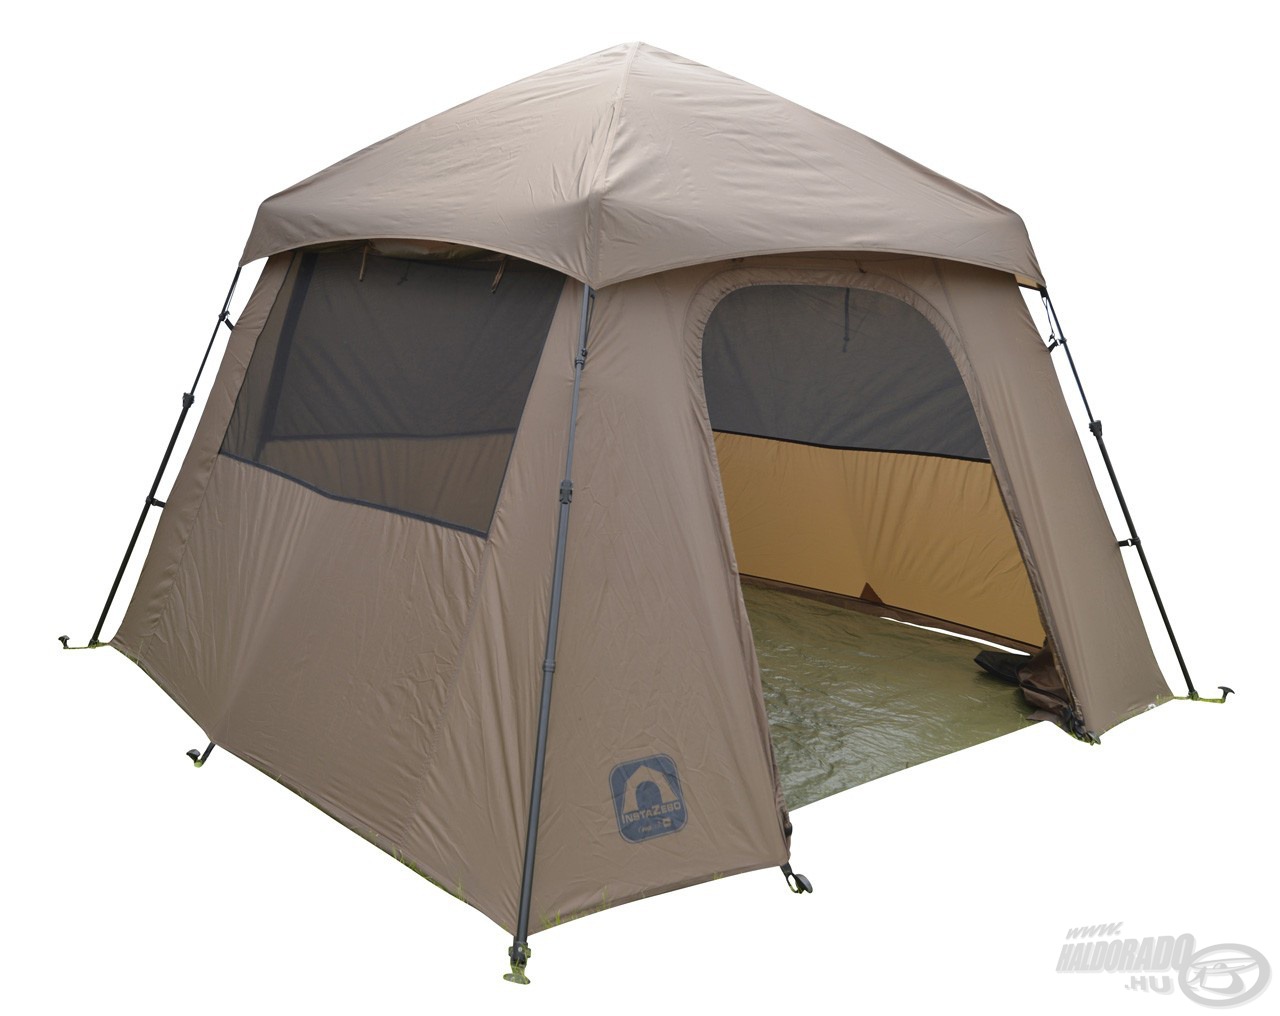 Nyári sátor azoknak, akik egy jól szellőző, teljes panoráma kilátást biztosító, könnyű és egyszerűen felállítható sátrat keresnek